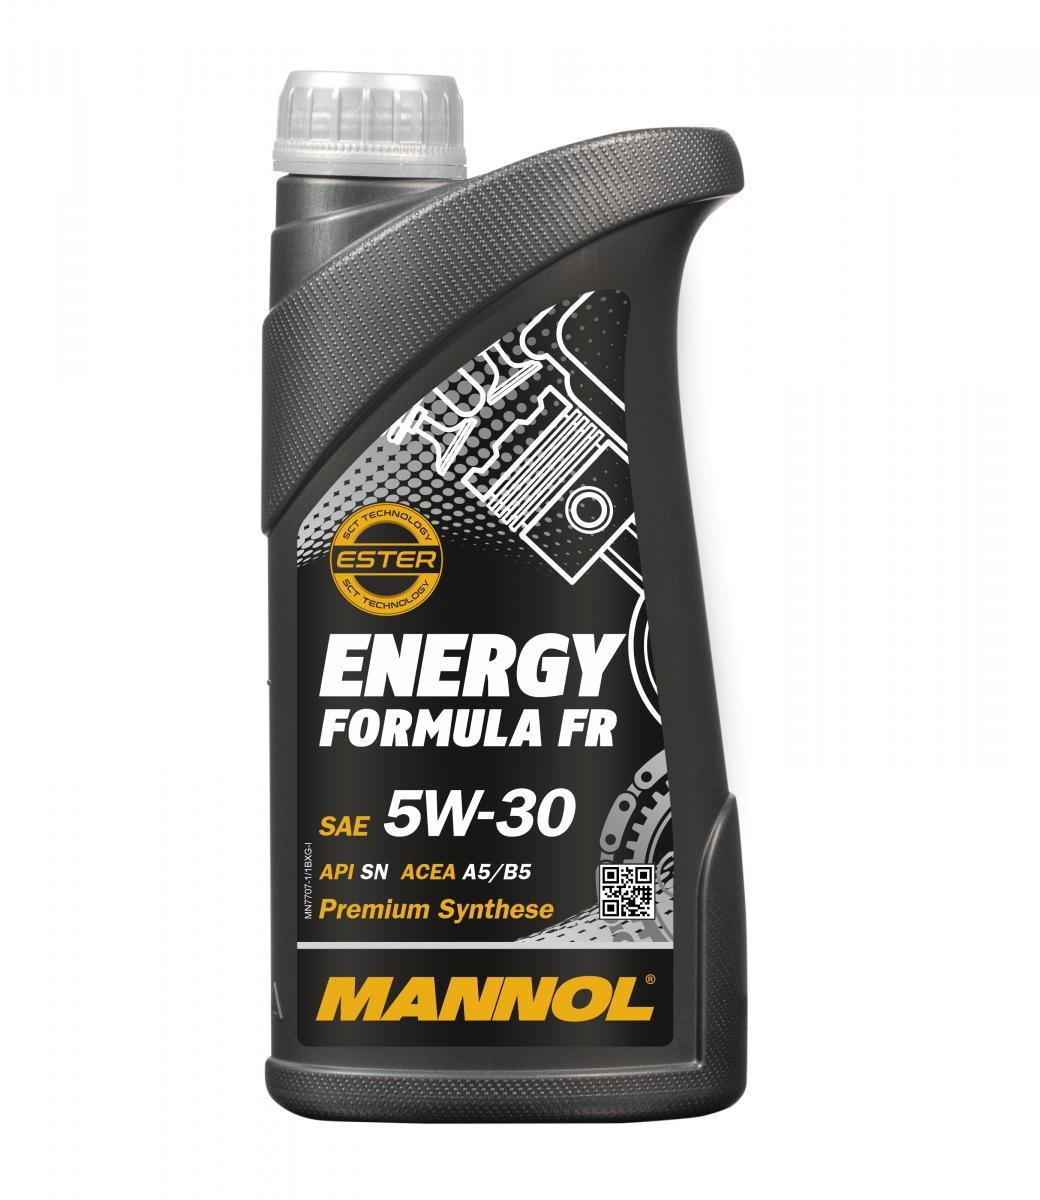 MANNOL MN7707-1 originálne PEUGEOT Motorový olej 5W-30, 1l, Syntetický olej